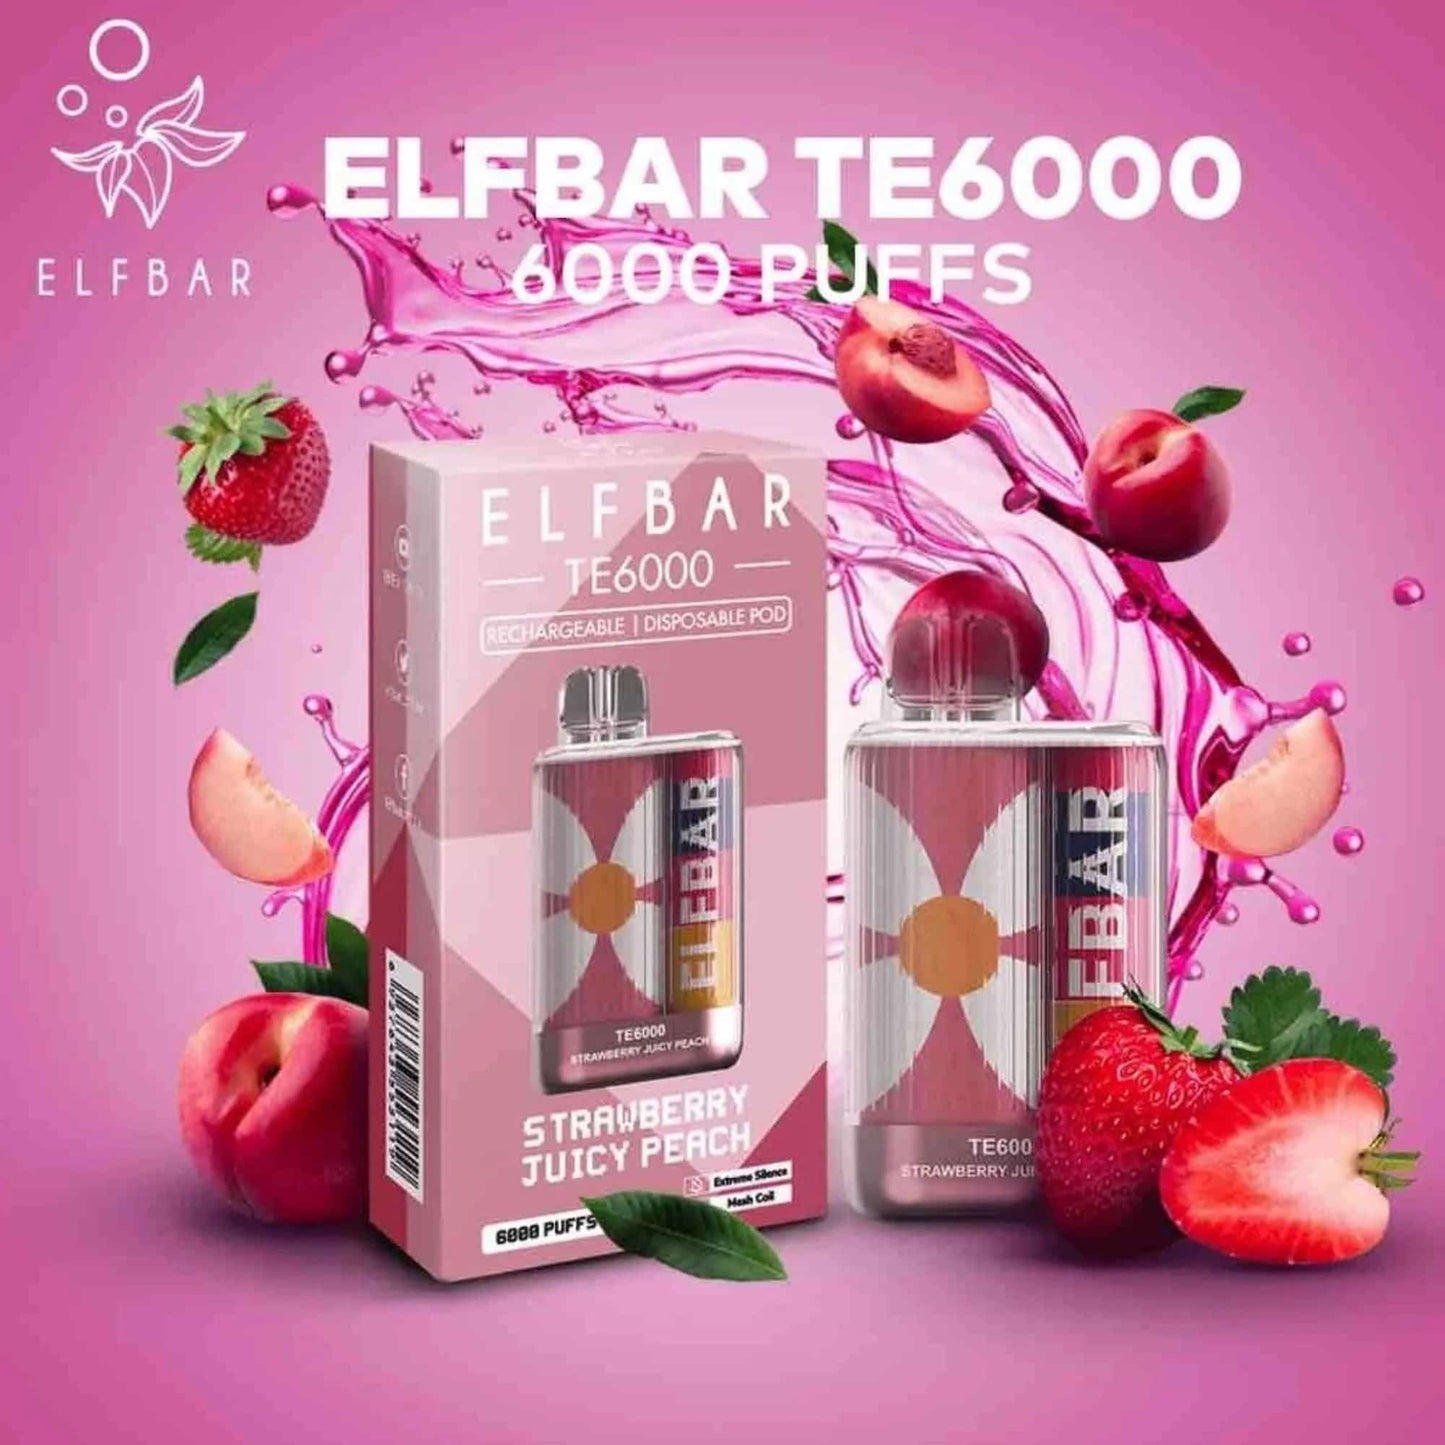 Elf Bar TE6000 - 6,000 Caladas